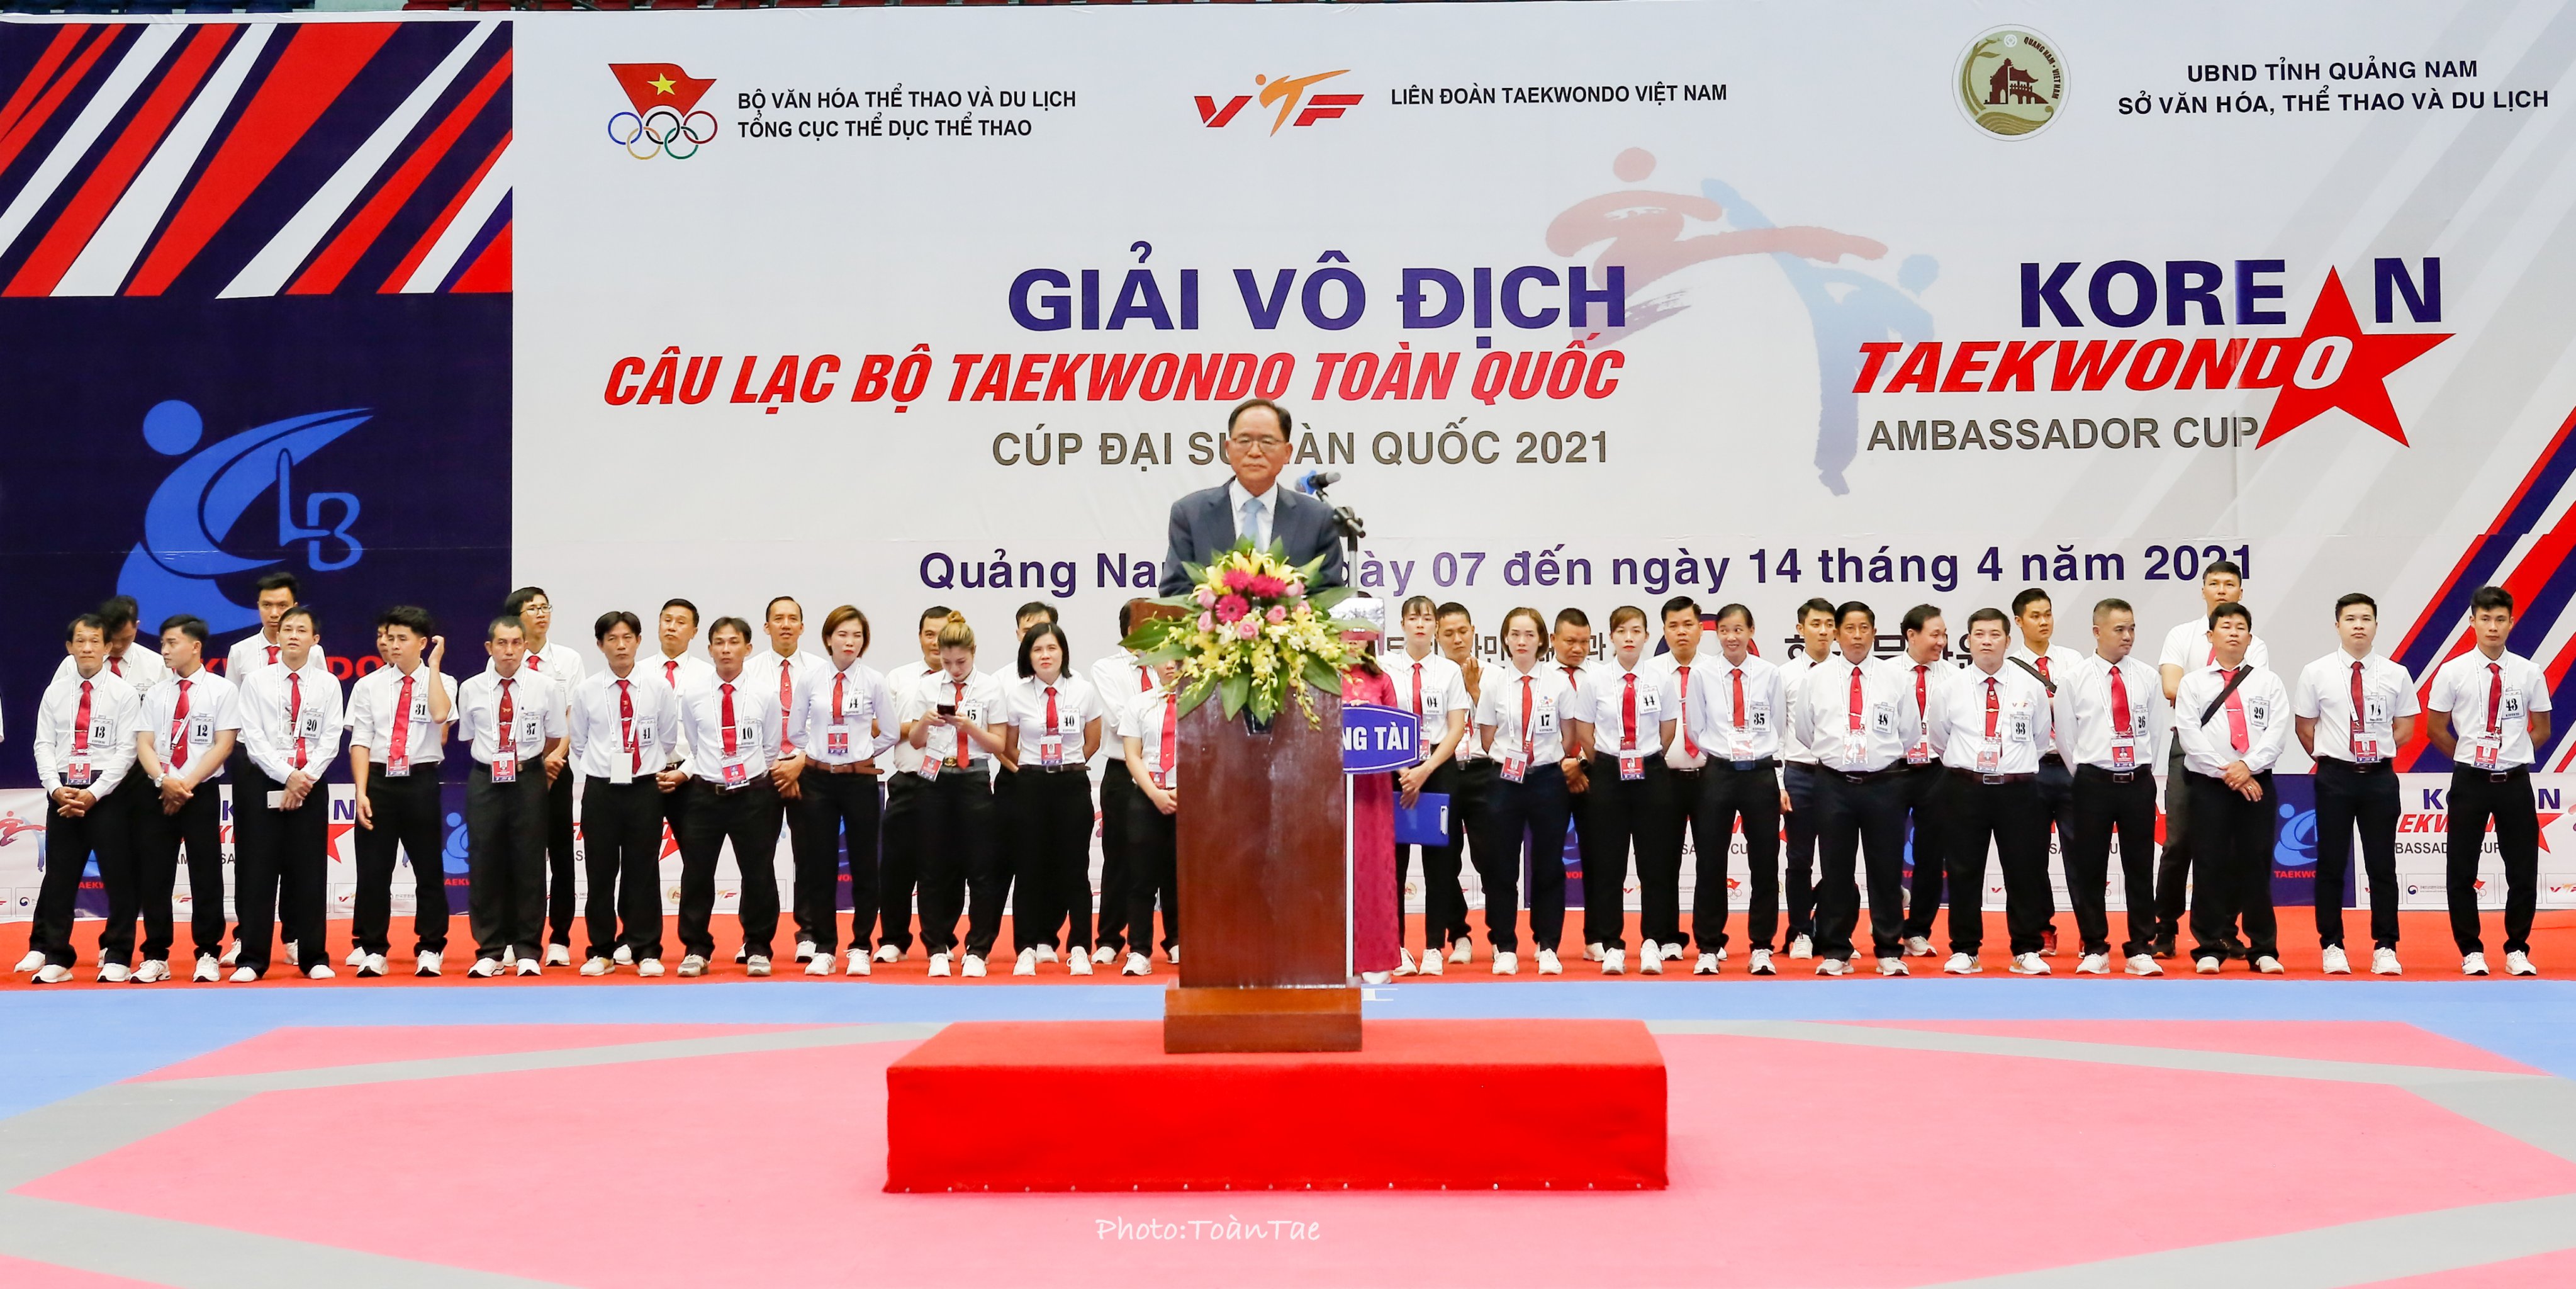 Khai mạc giải vô địch Taekwondo các CLB toàn quốc - Cup Đại sứ Hàn Quốc năm 2021